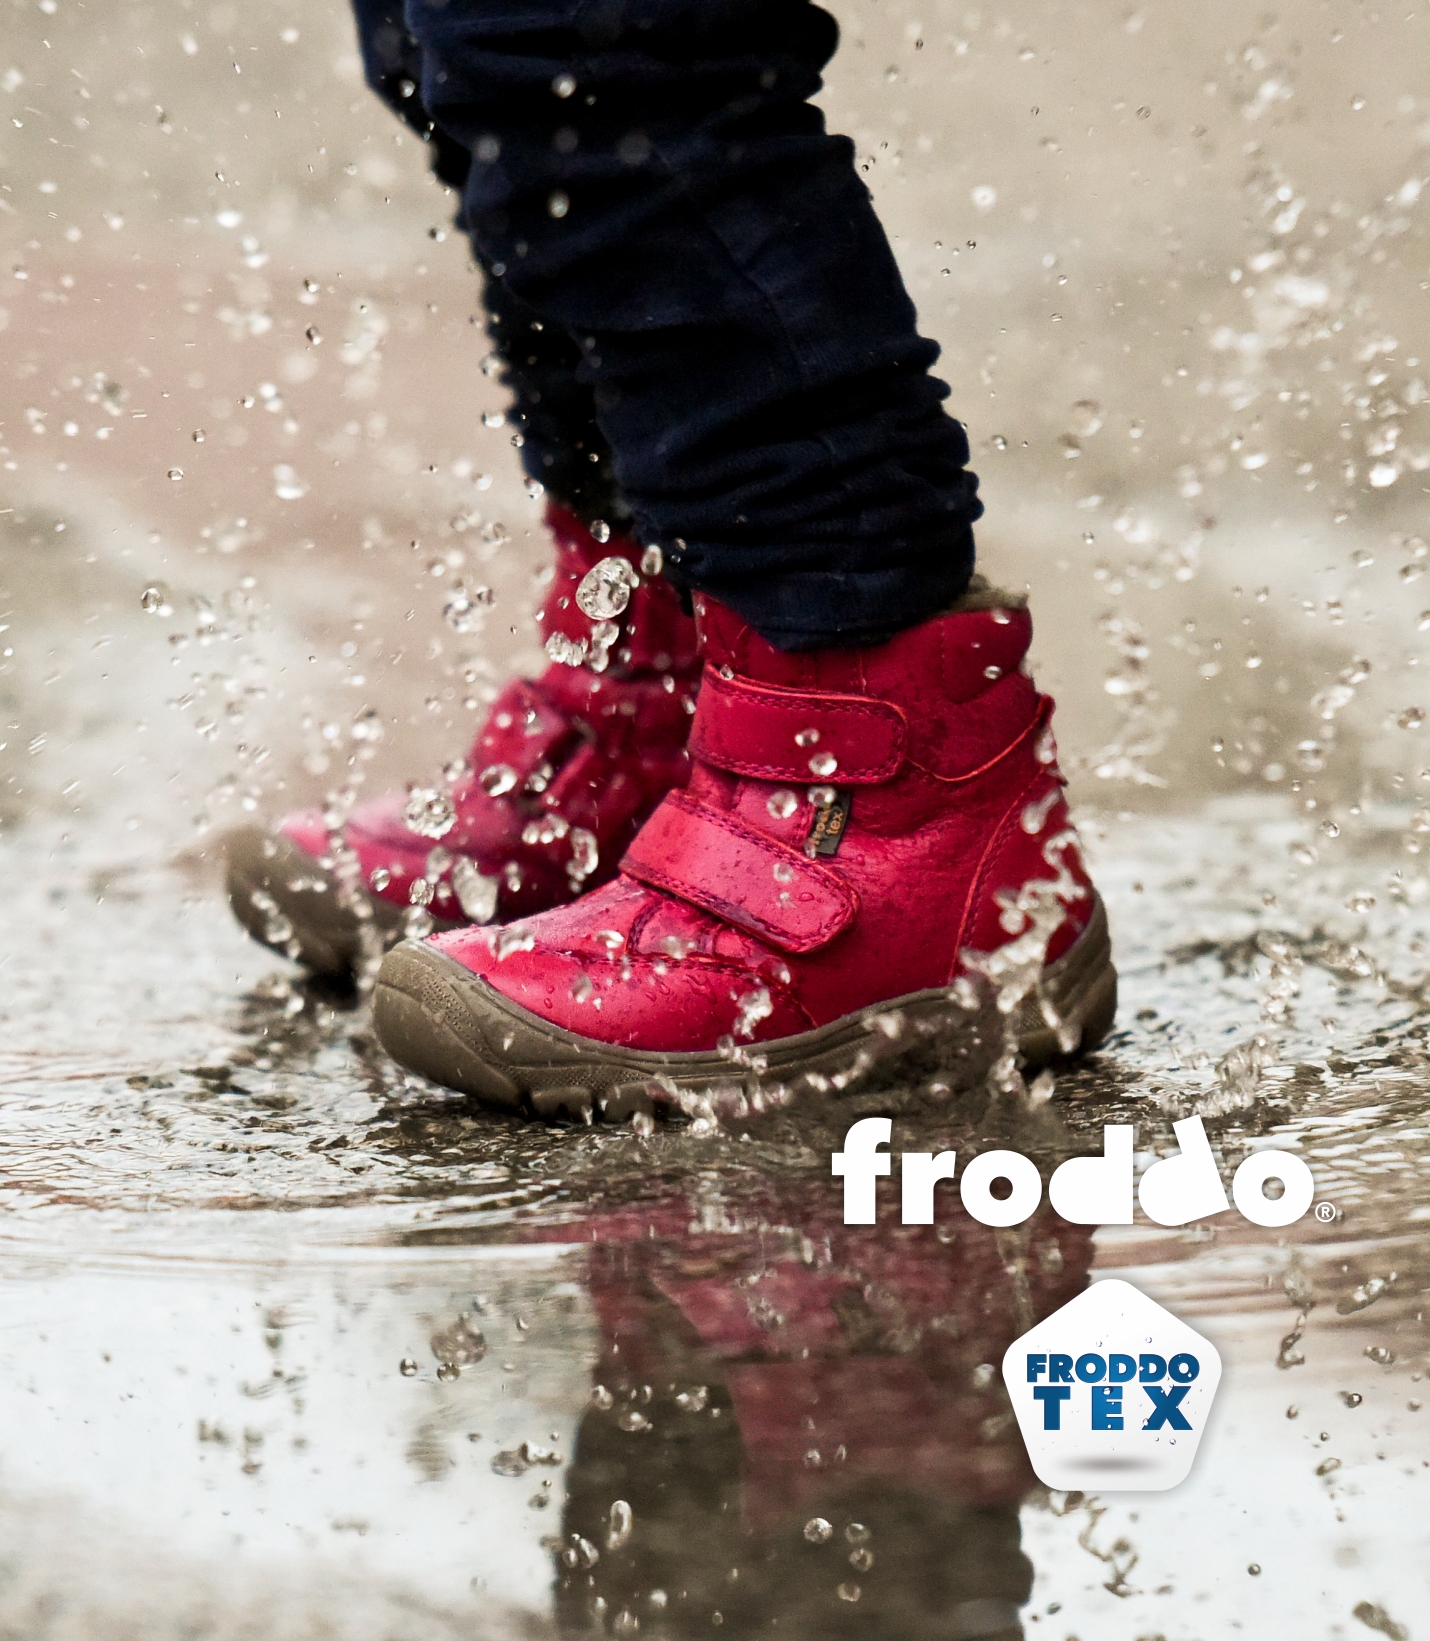 Froddo Waterproof